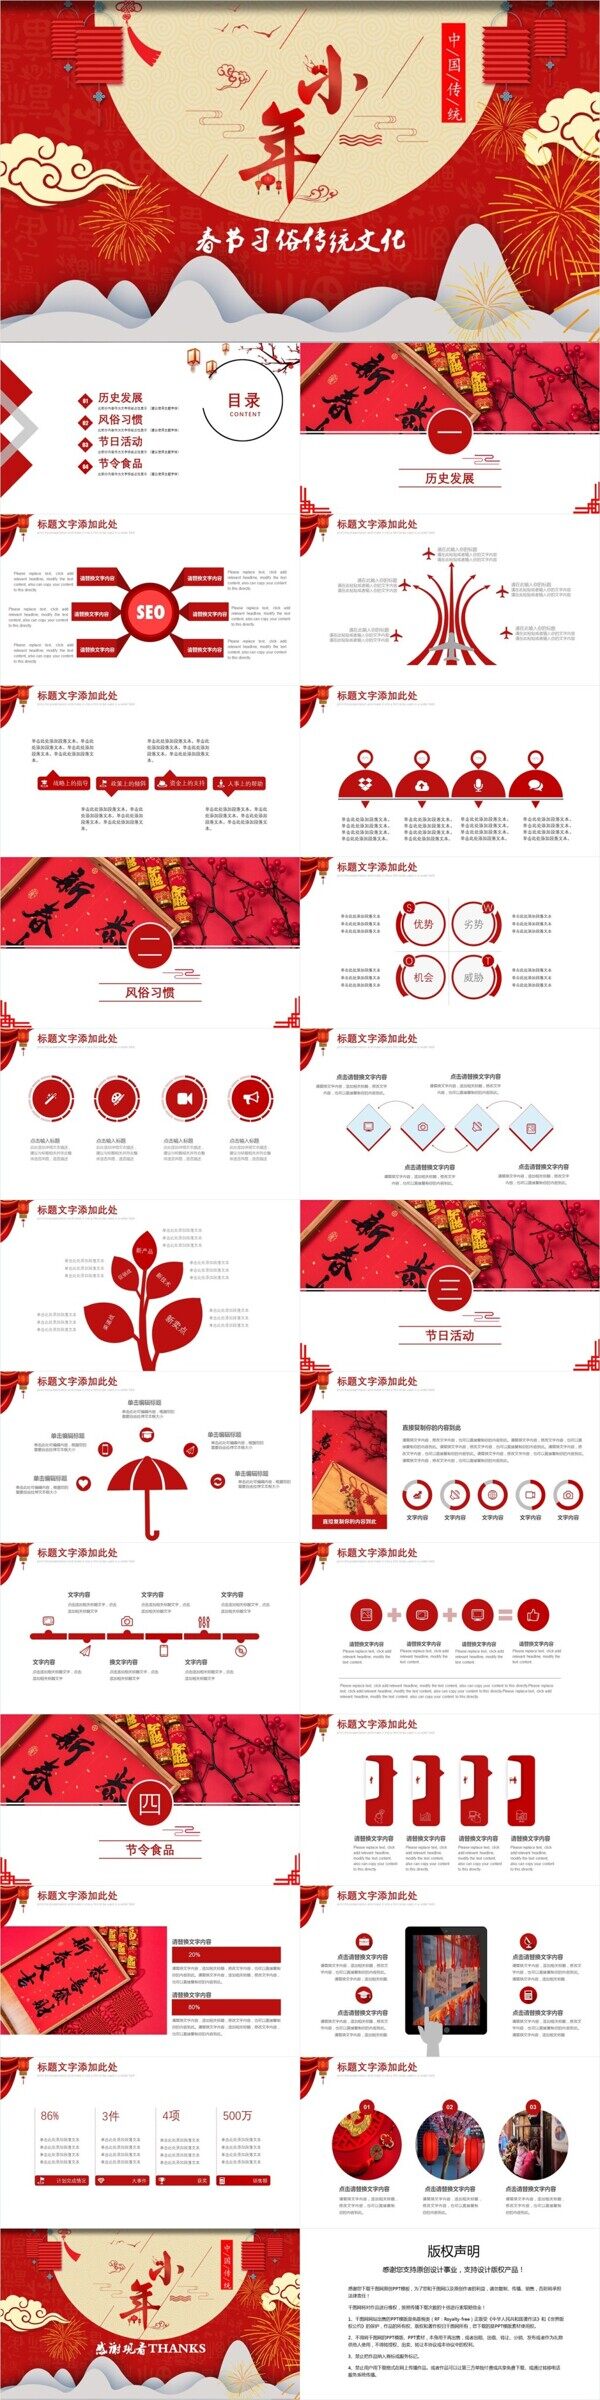 创意春节习俗传统文化节日庆典PPT模板